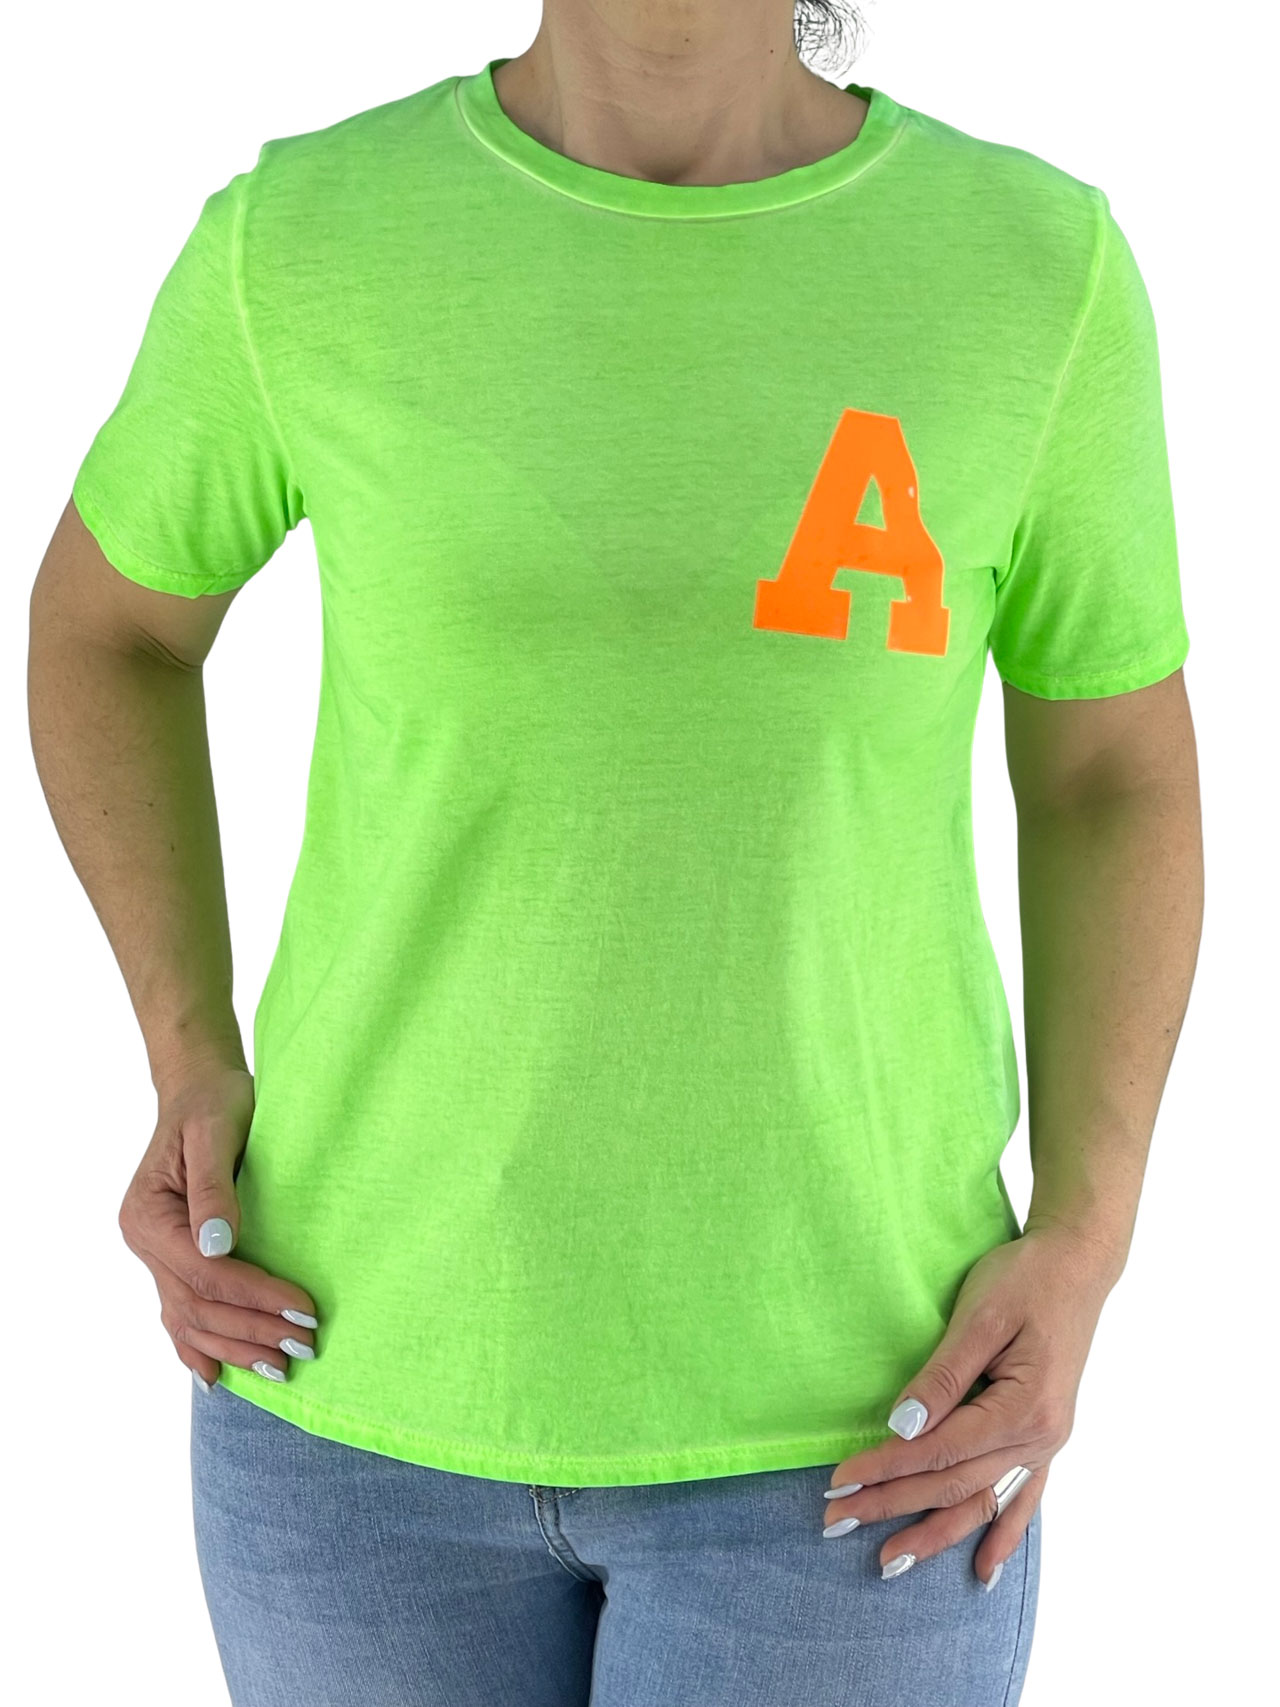 T-shirt μονόχρωμο με τύπωμα κωδ. 520262 μπροστινή όψη πράσινο